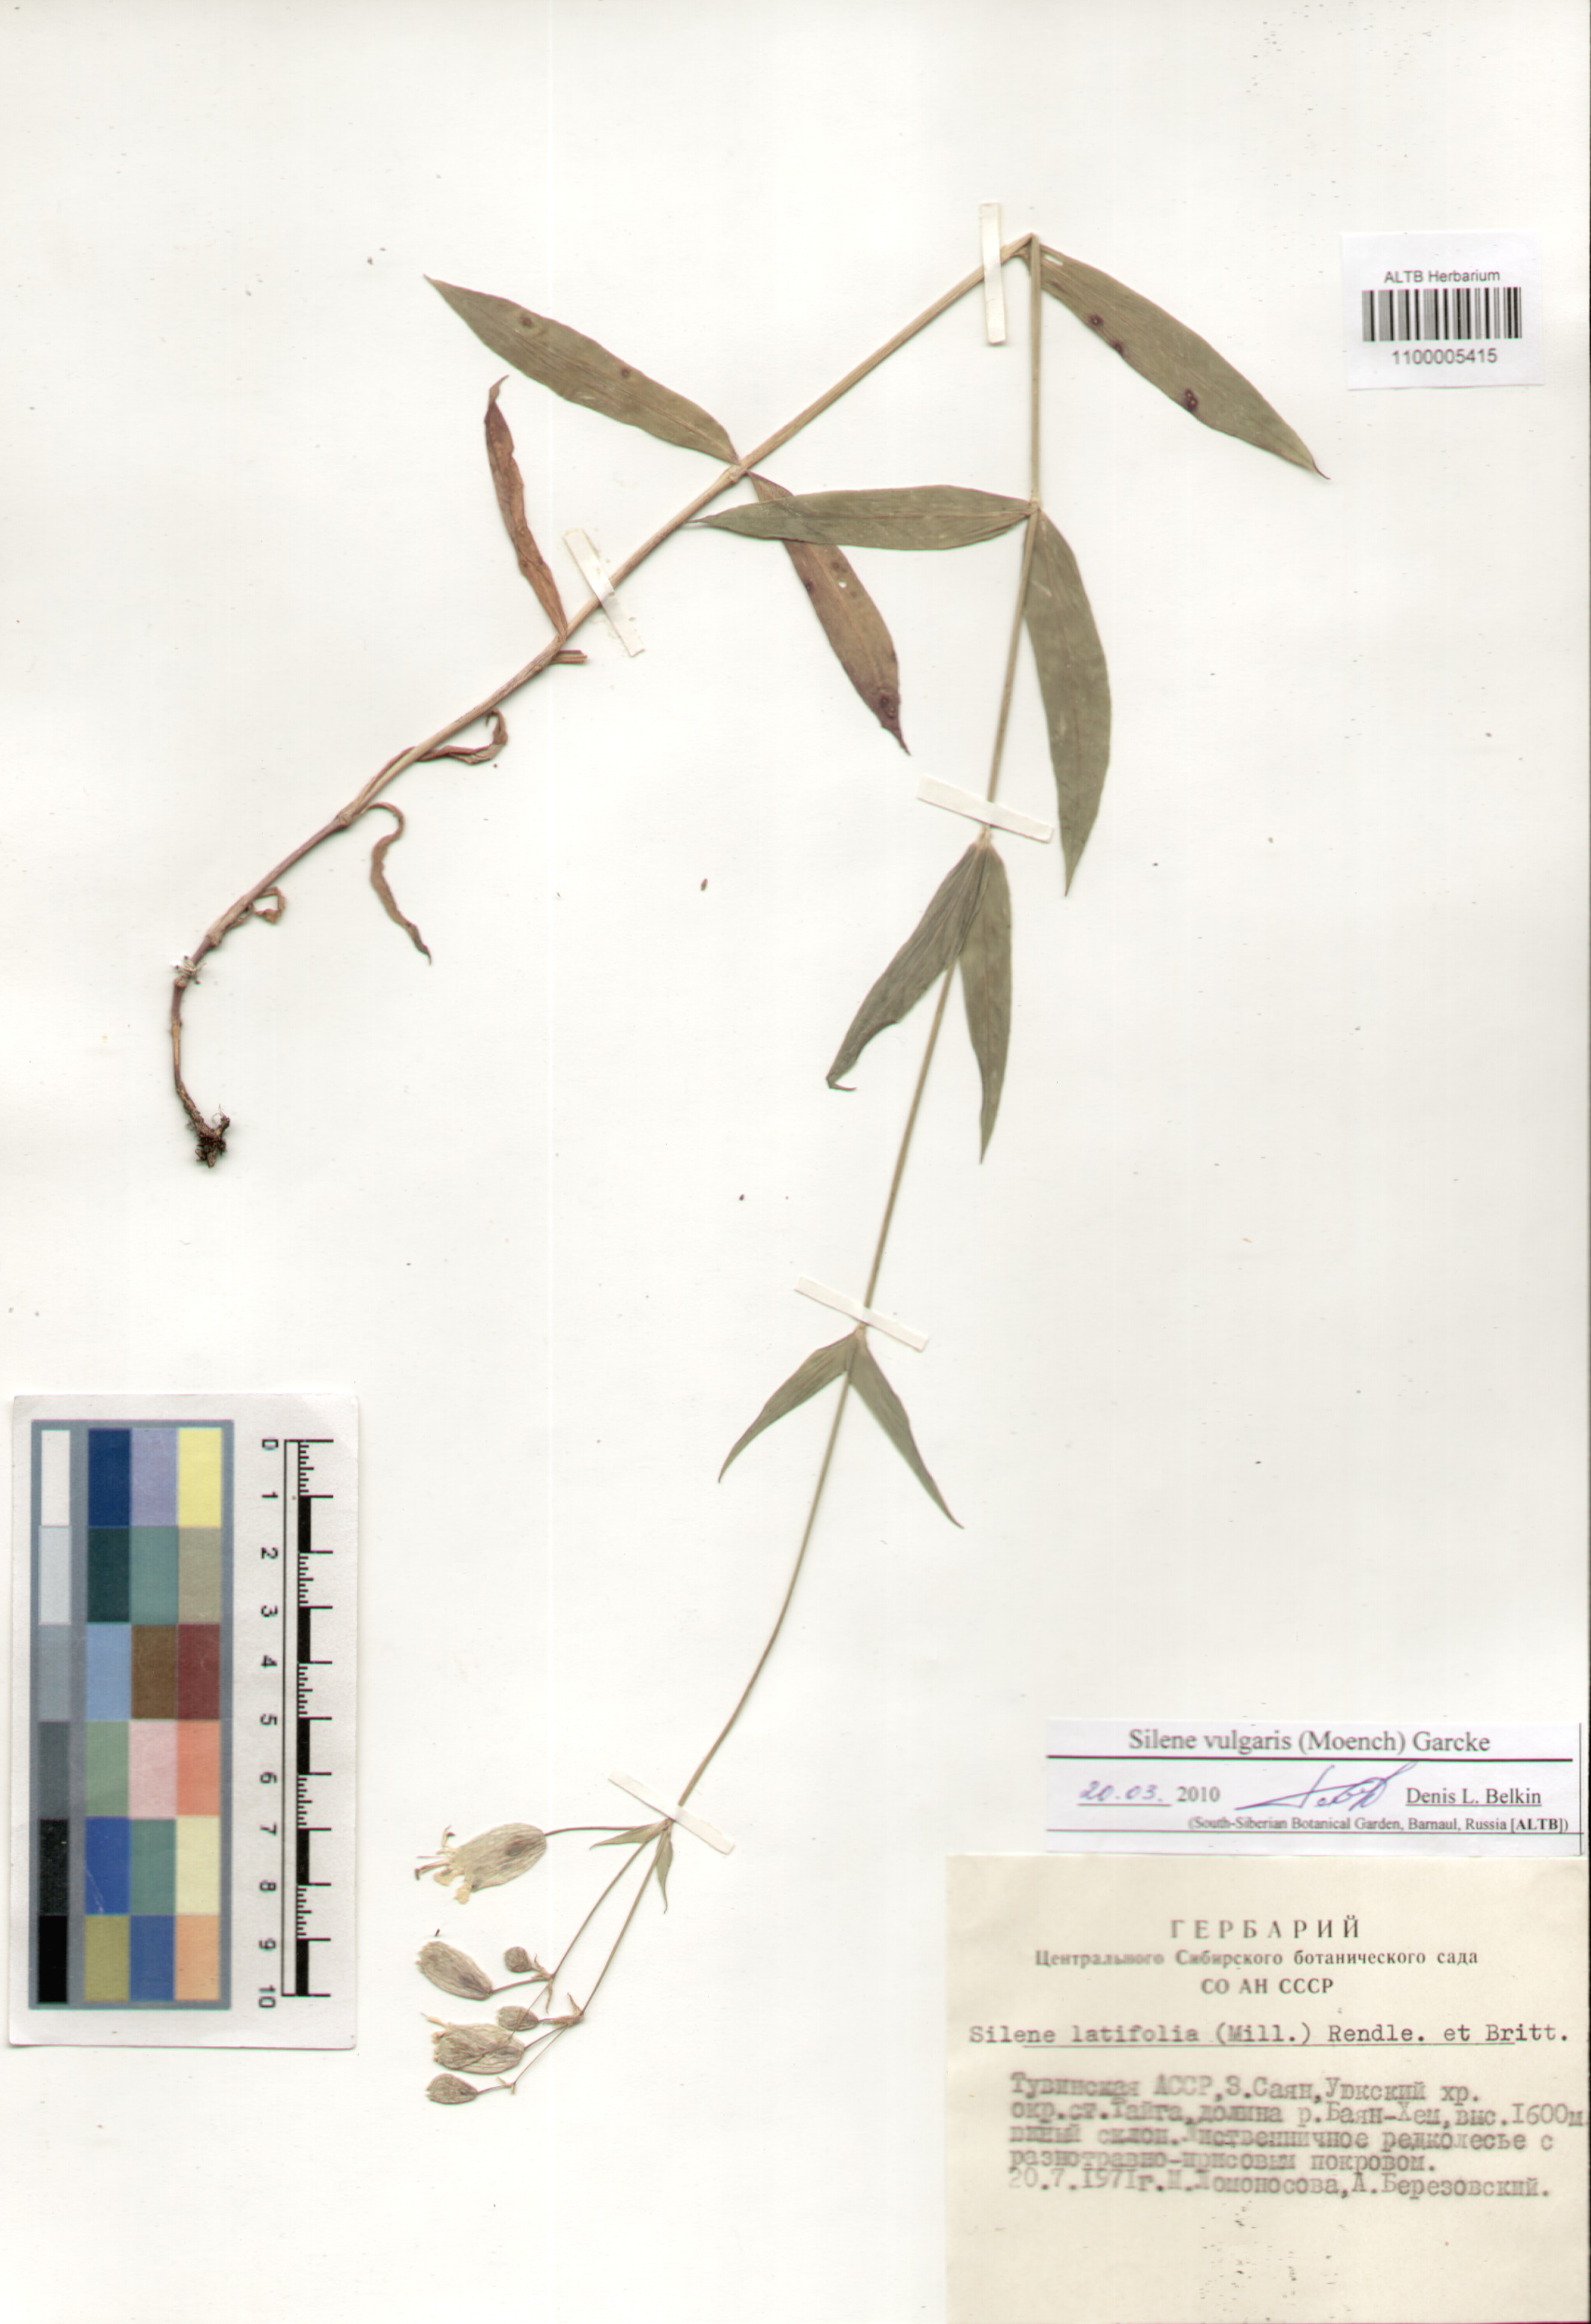 Caryophyllaceae,Silene vulgaris (Moench) Garcke.